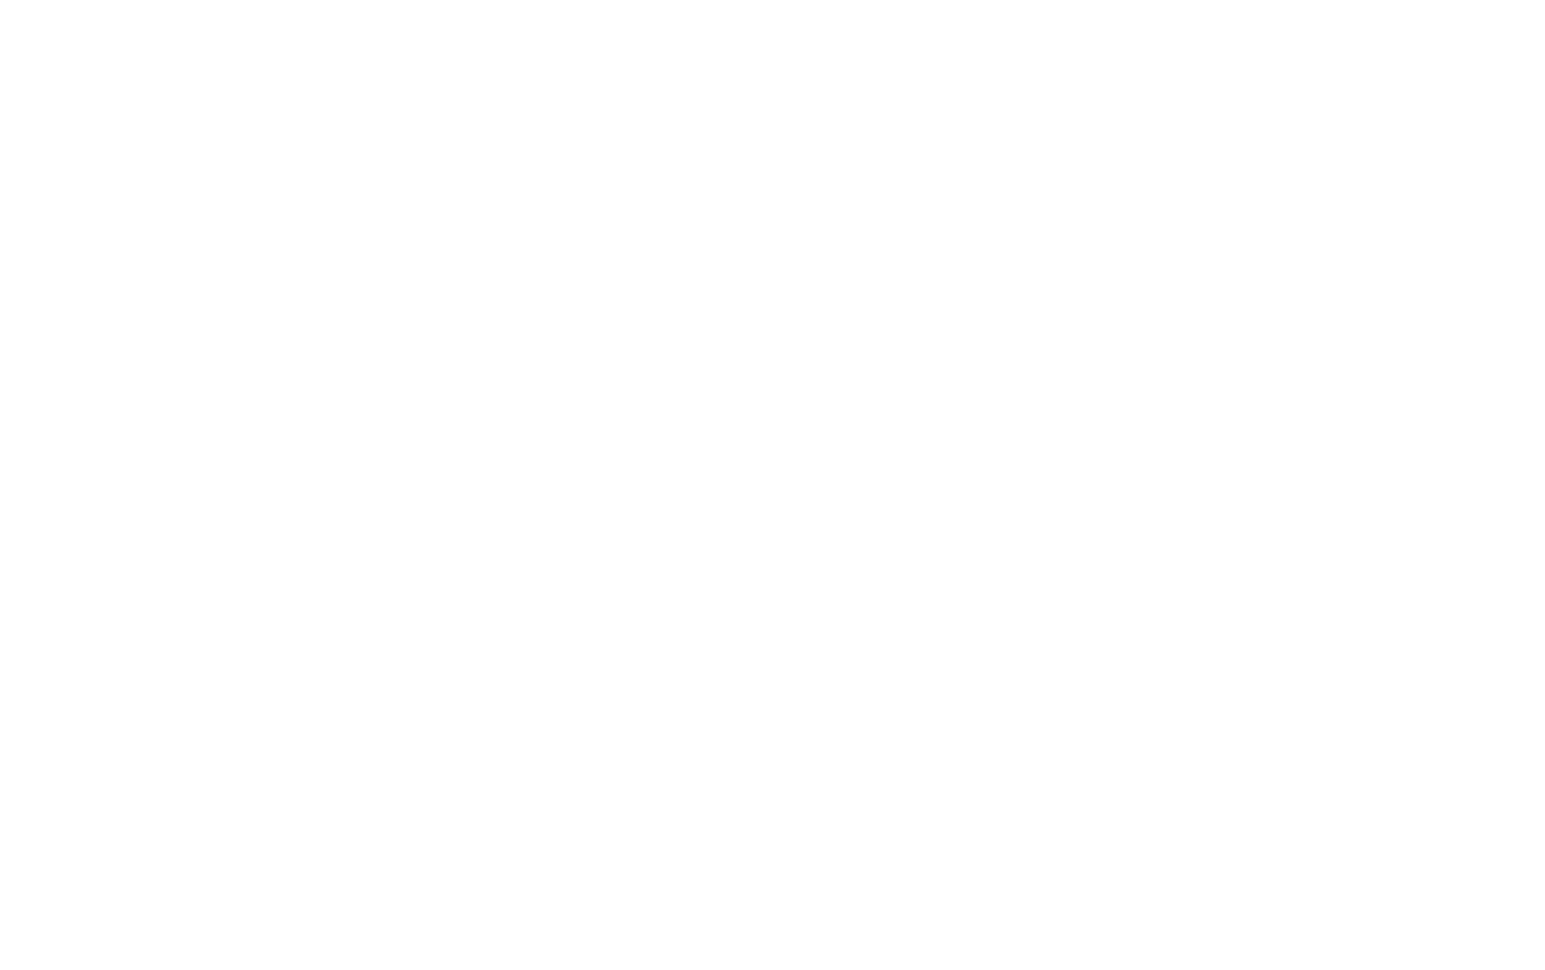 KV logo white